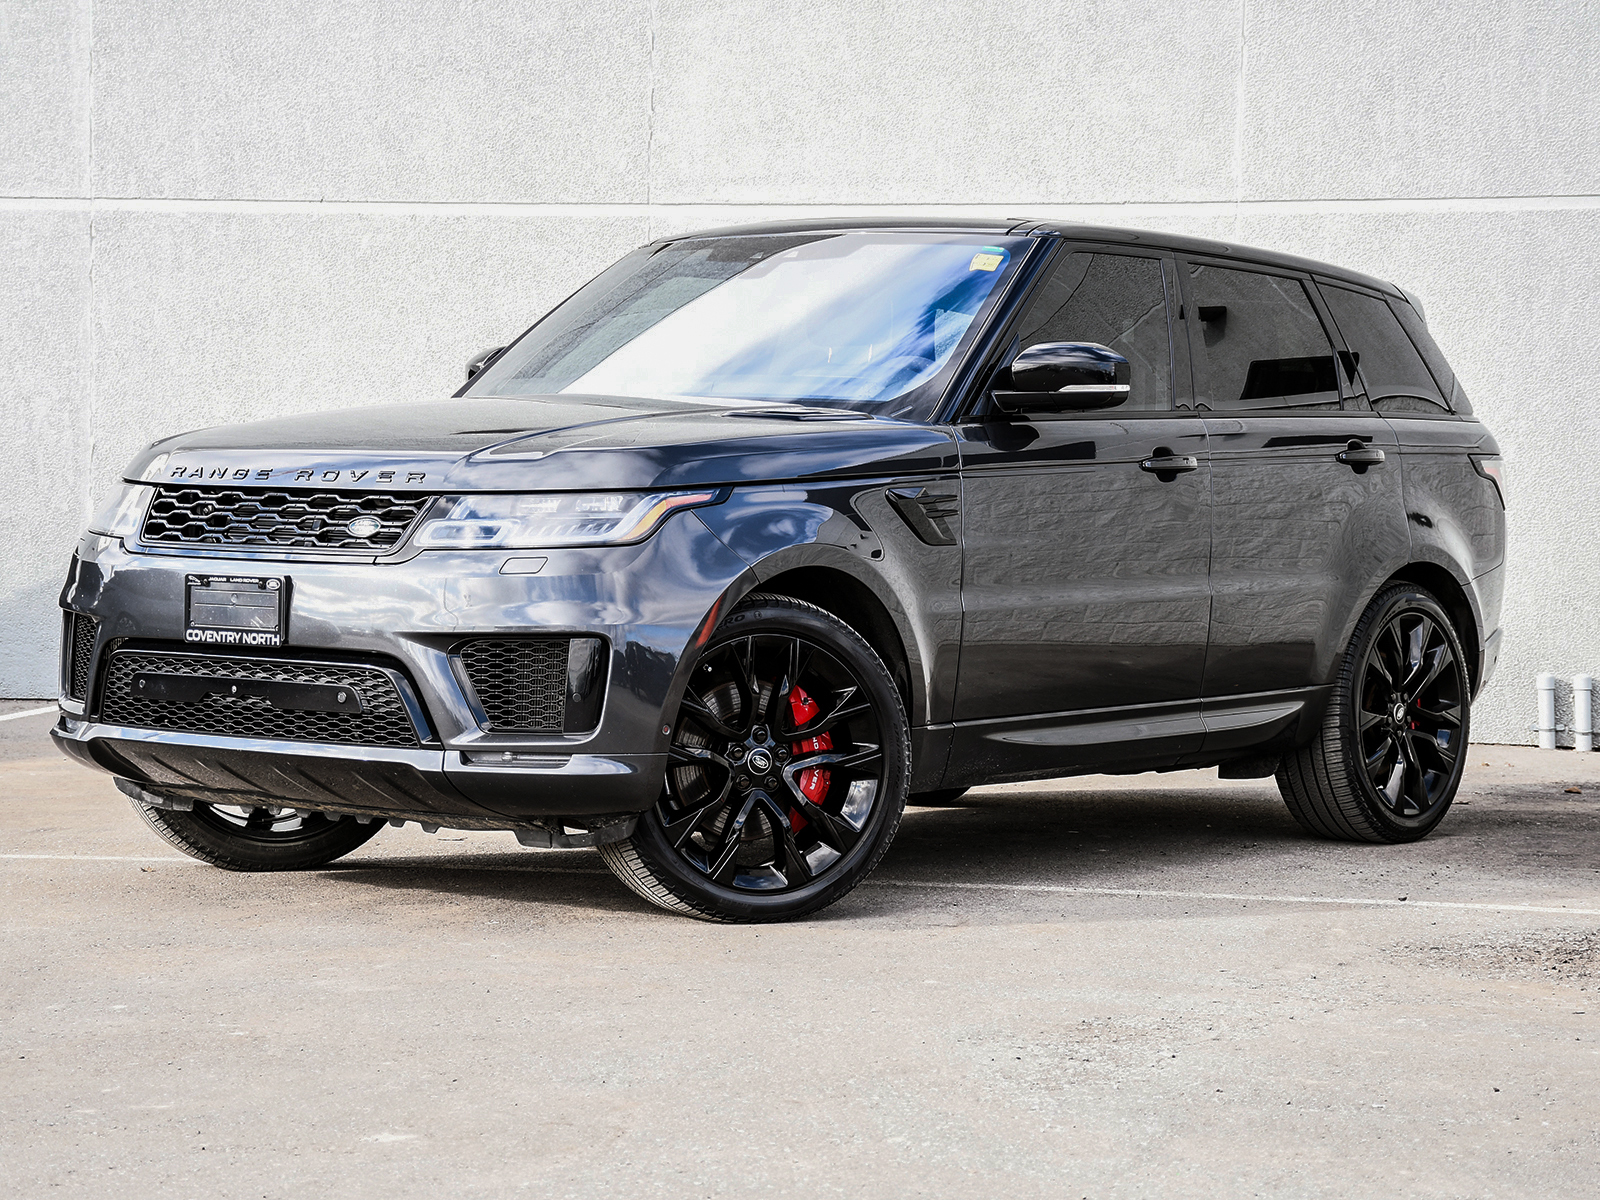 2020 Land Rover Range Rover Sport HST